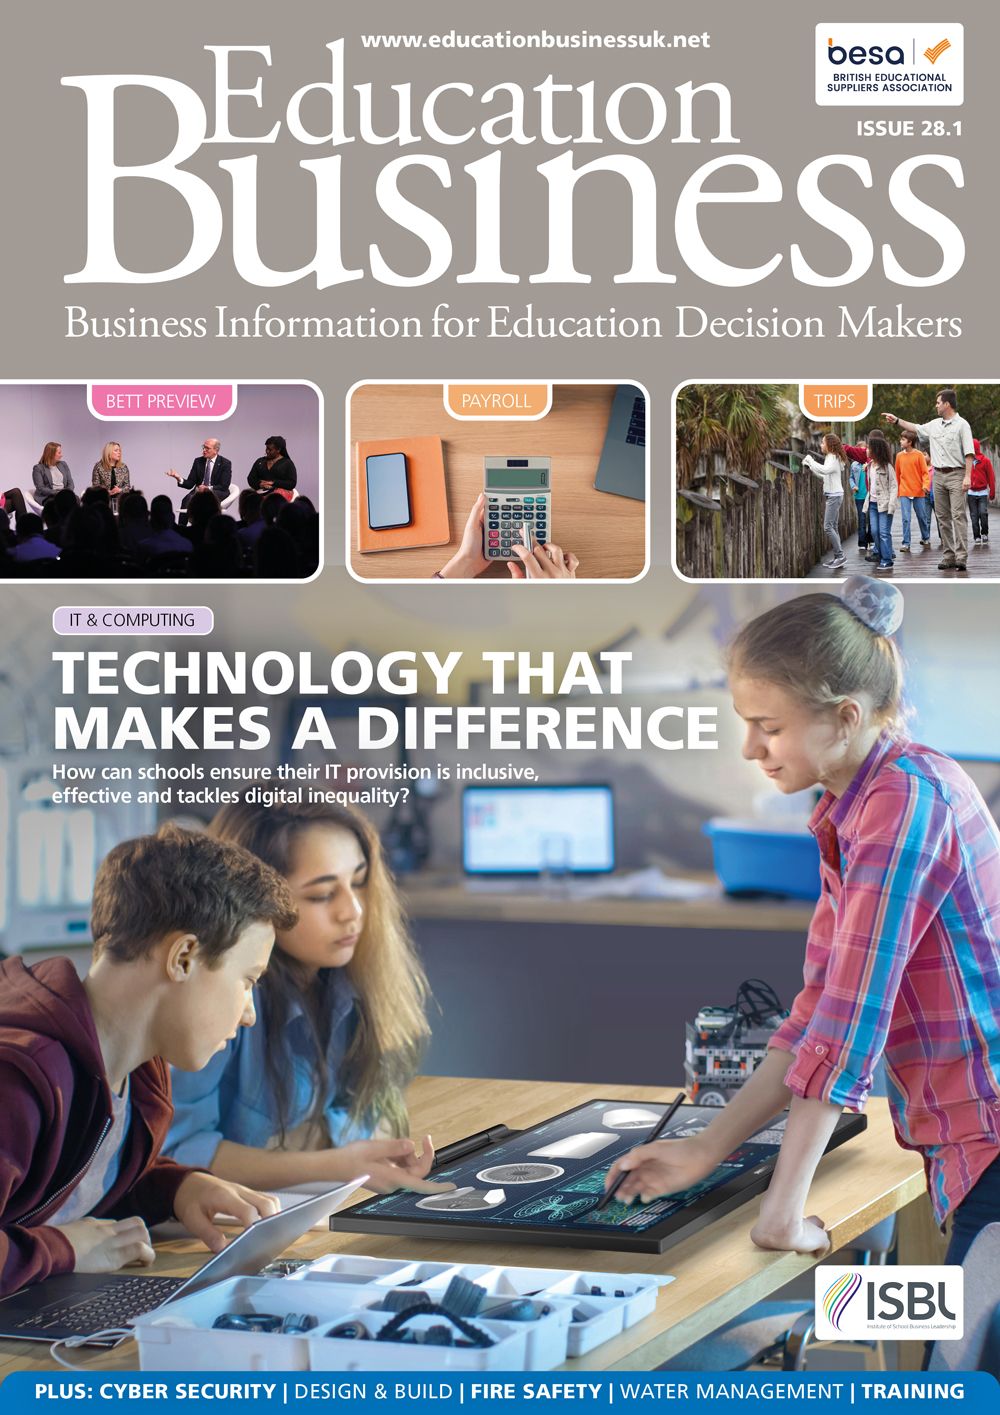 Education Business magazine